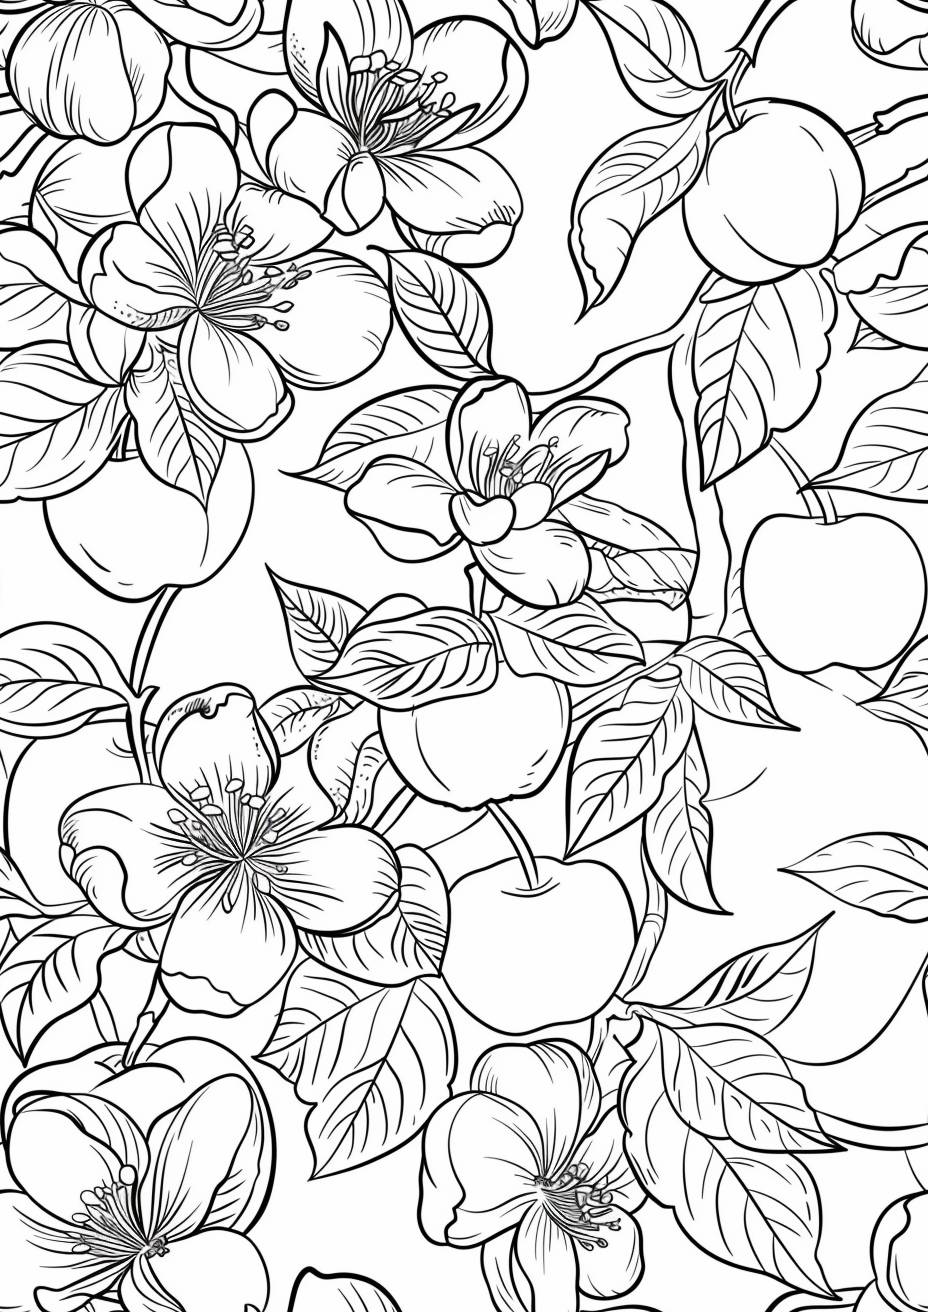 ぬり絵のページ、白いリンゴの花と美しい緑のリンゴ